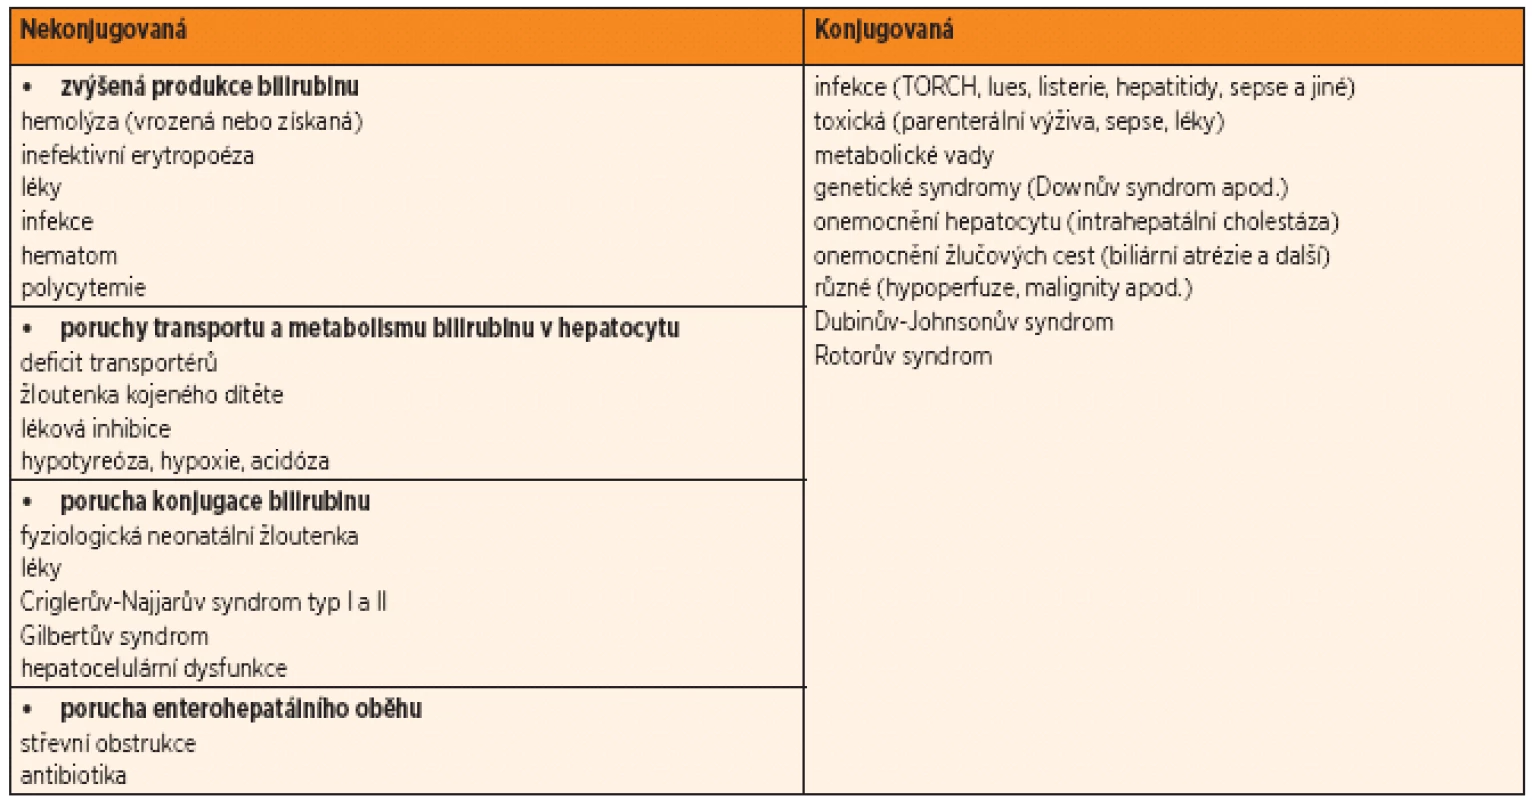 Nejčastější příčiny nekonjugované a konjugované hyperbilirubinemie (bez ohledu na věk). S využitím podkladů z Nelson‘s Textbook of Pediatrics, 17. vydání, Elsevier, Philadelphia, 2004, a podle Klinik Leitfaden Pädiatrie, 4. vyd., Stuttgart, 1998.